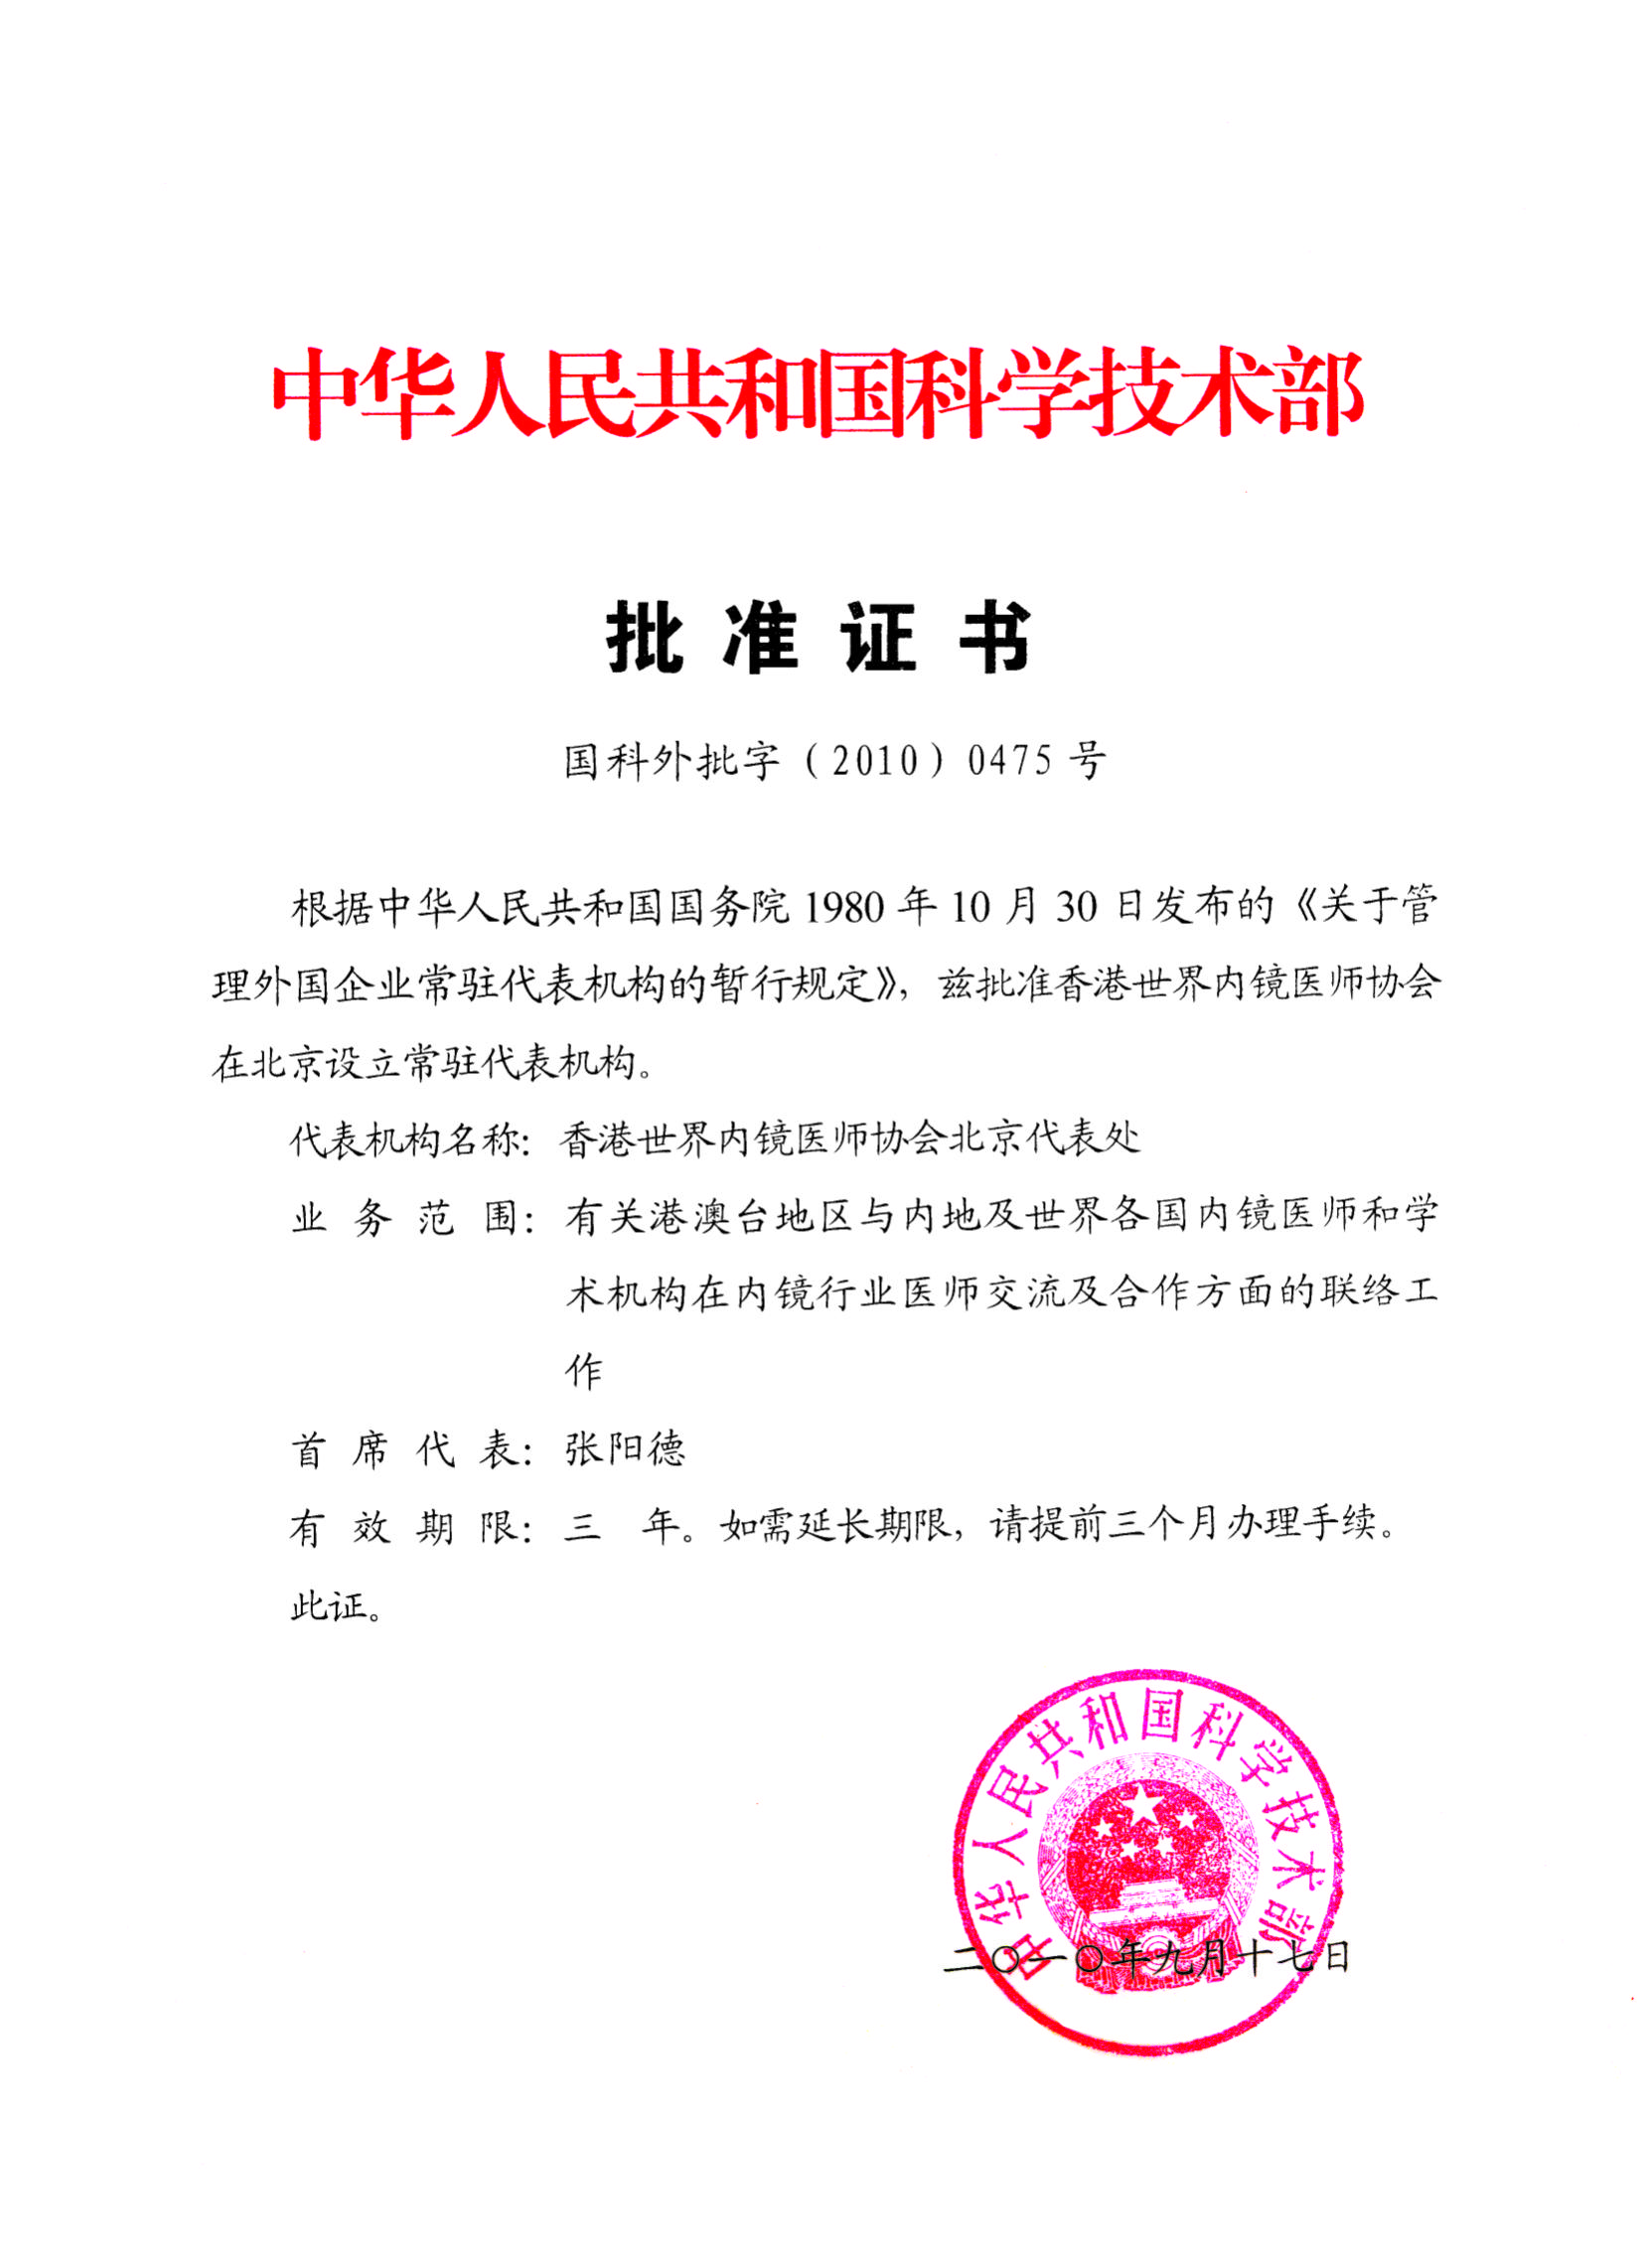 中国科技部批准世界内镜在北京设立常驻机构的批示文件（2010年）